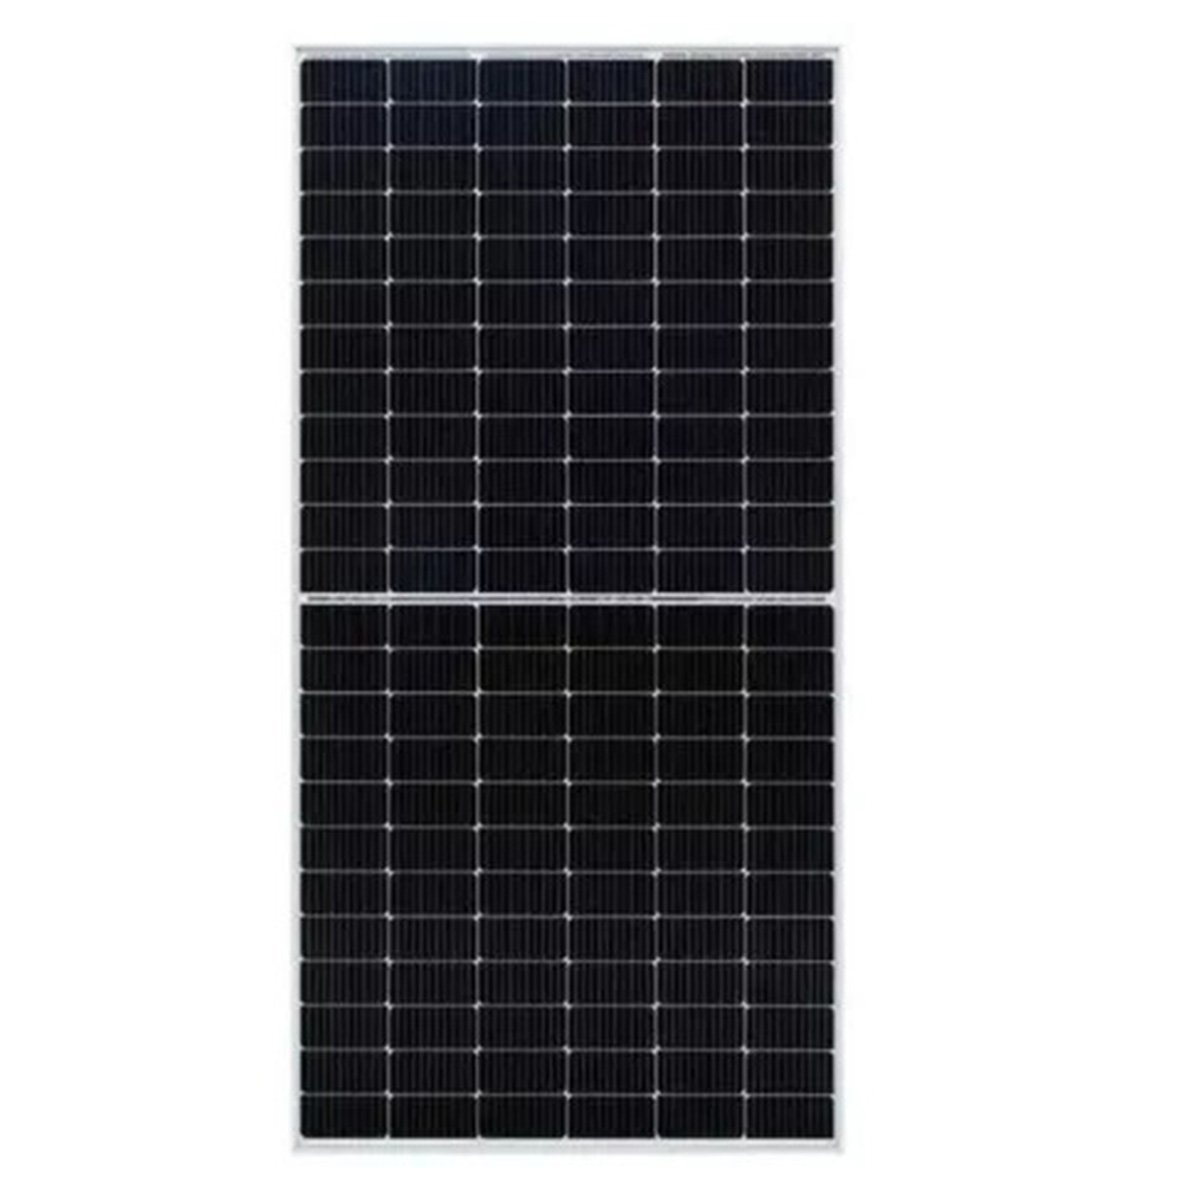 Painel Solar Placa Fotovoltaica 550W 2 Metros Monocristalino Energia Renovavel Economia Solar SA1821 - 5